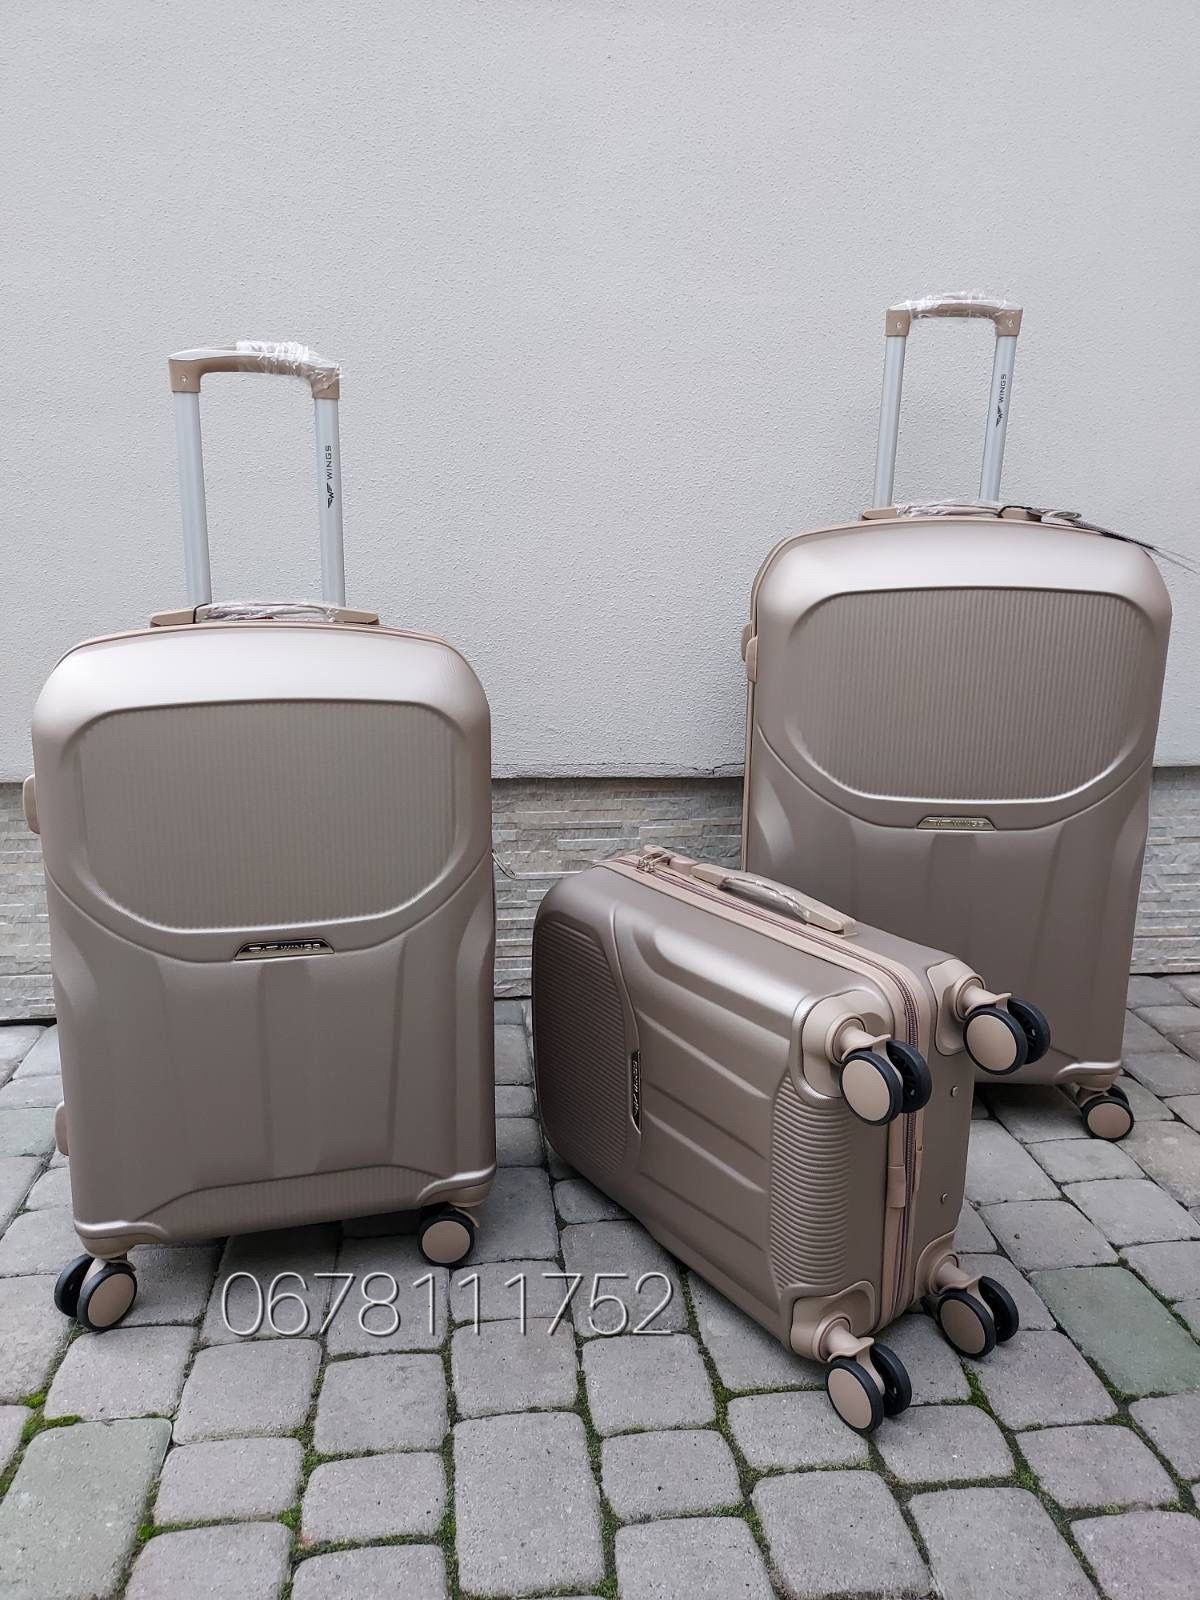 На подвійних колесах WINGS PDT01 Польща валізи чемоданы сумки на колес